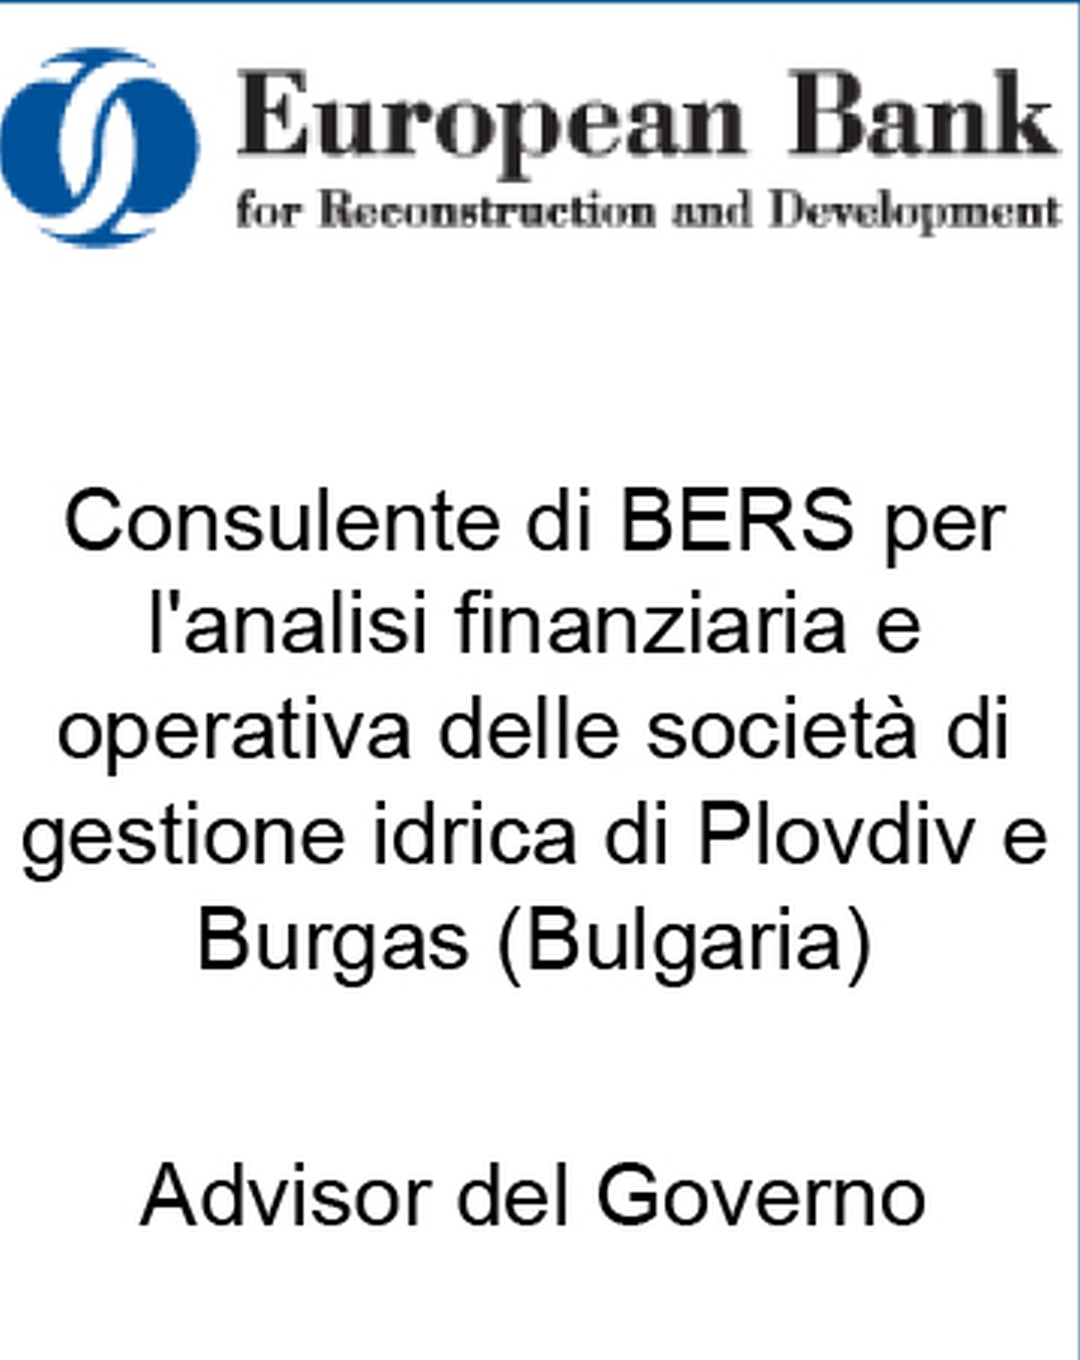 Consulente di BERS per l'analisi finanziaria e operativa delle società di gestione idrica di Plovdiv e Burgas (Bulgaria)